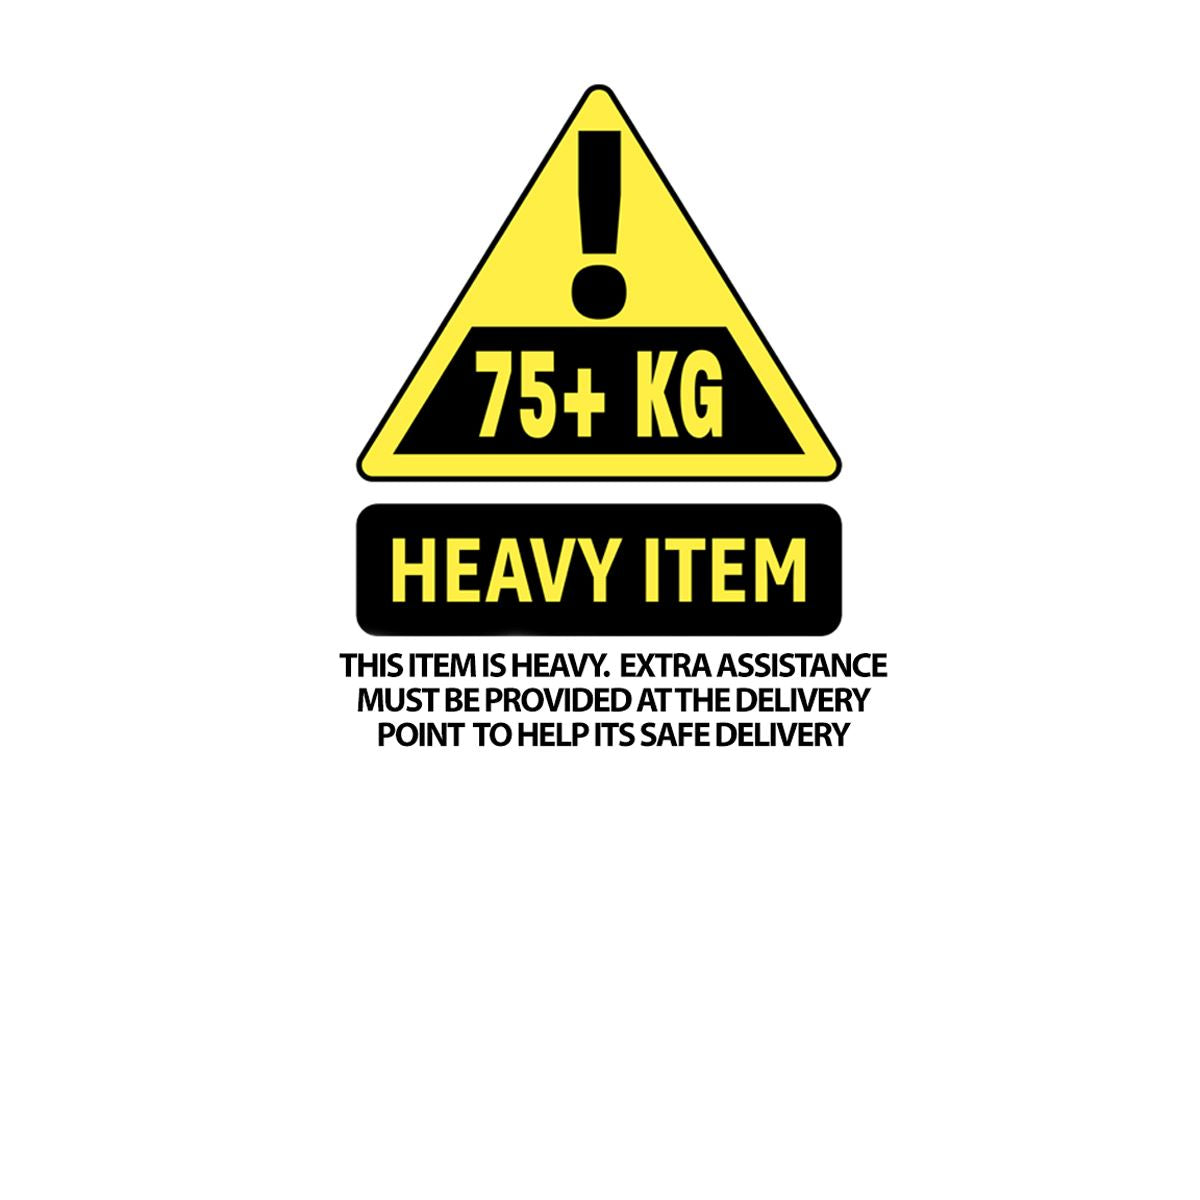 Sealey Heavy-Duty Electro/Hydraulic Motorcycle Lift 680kg Capacity